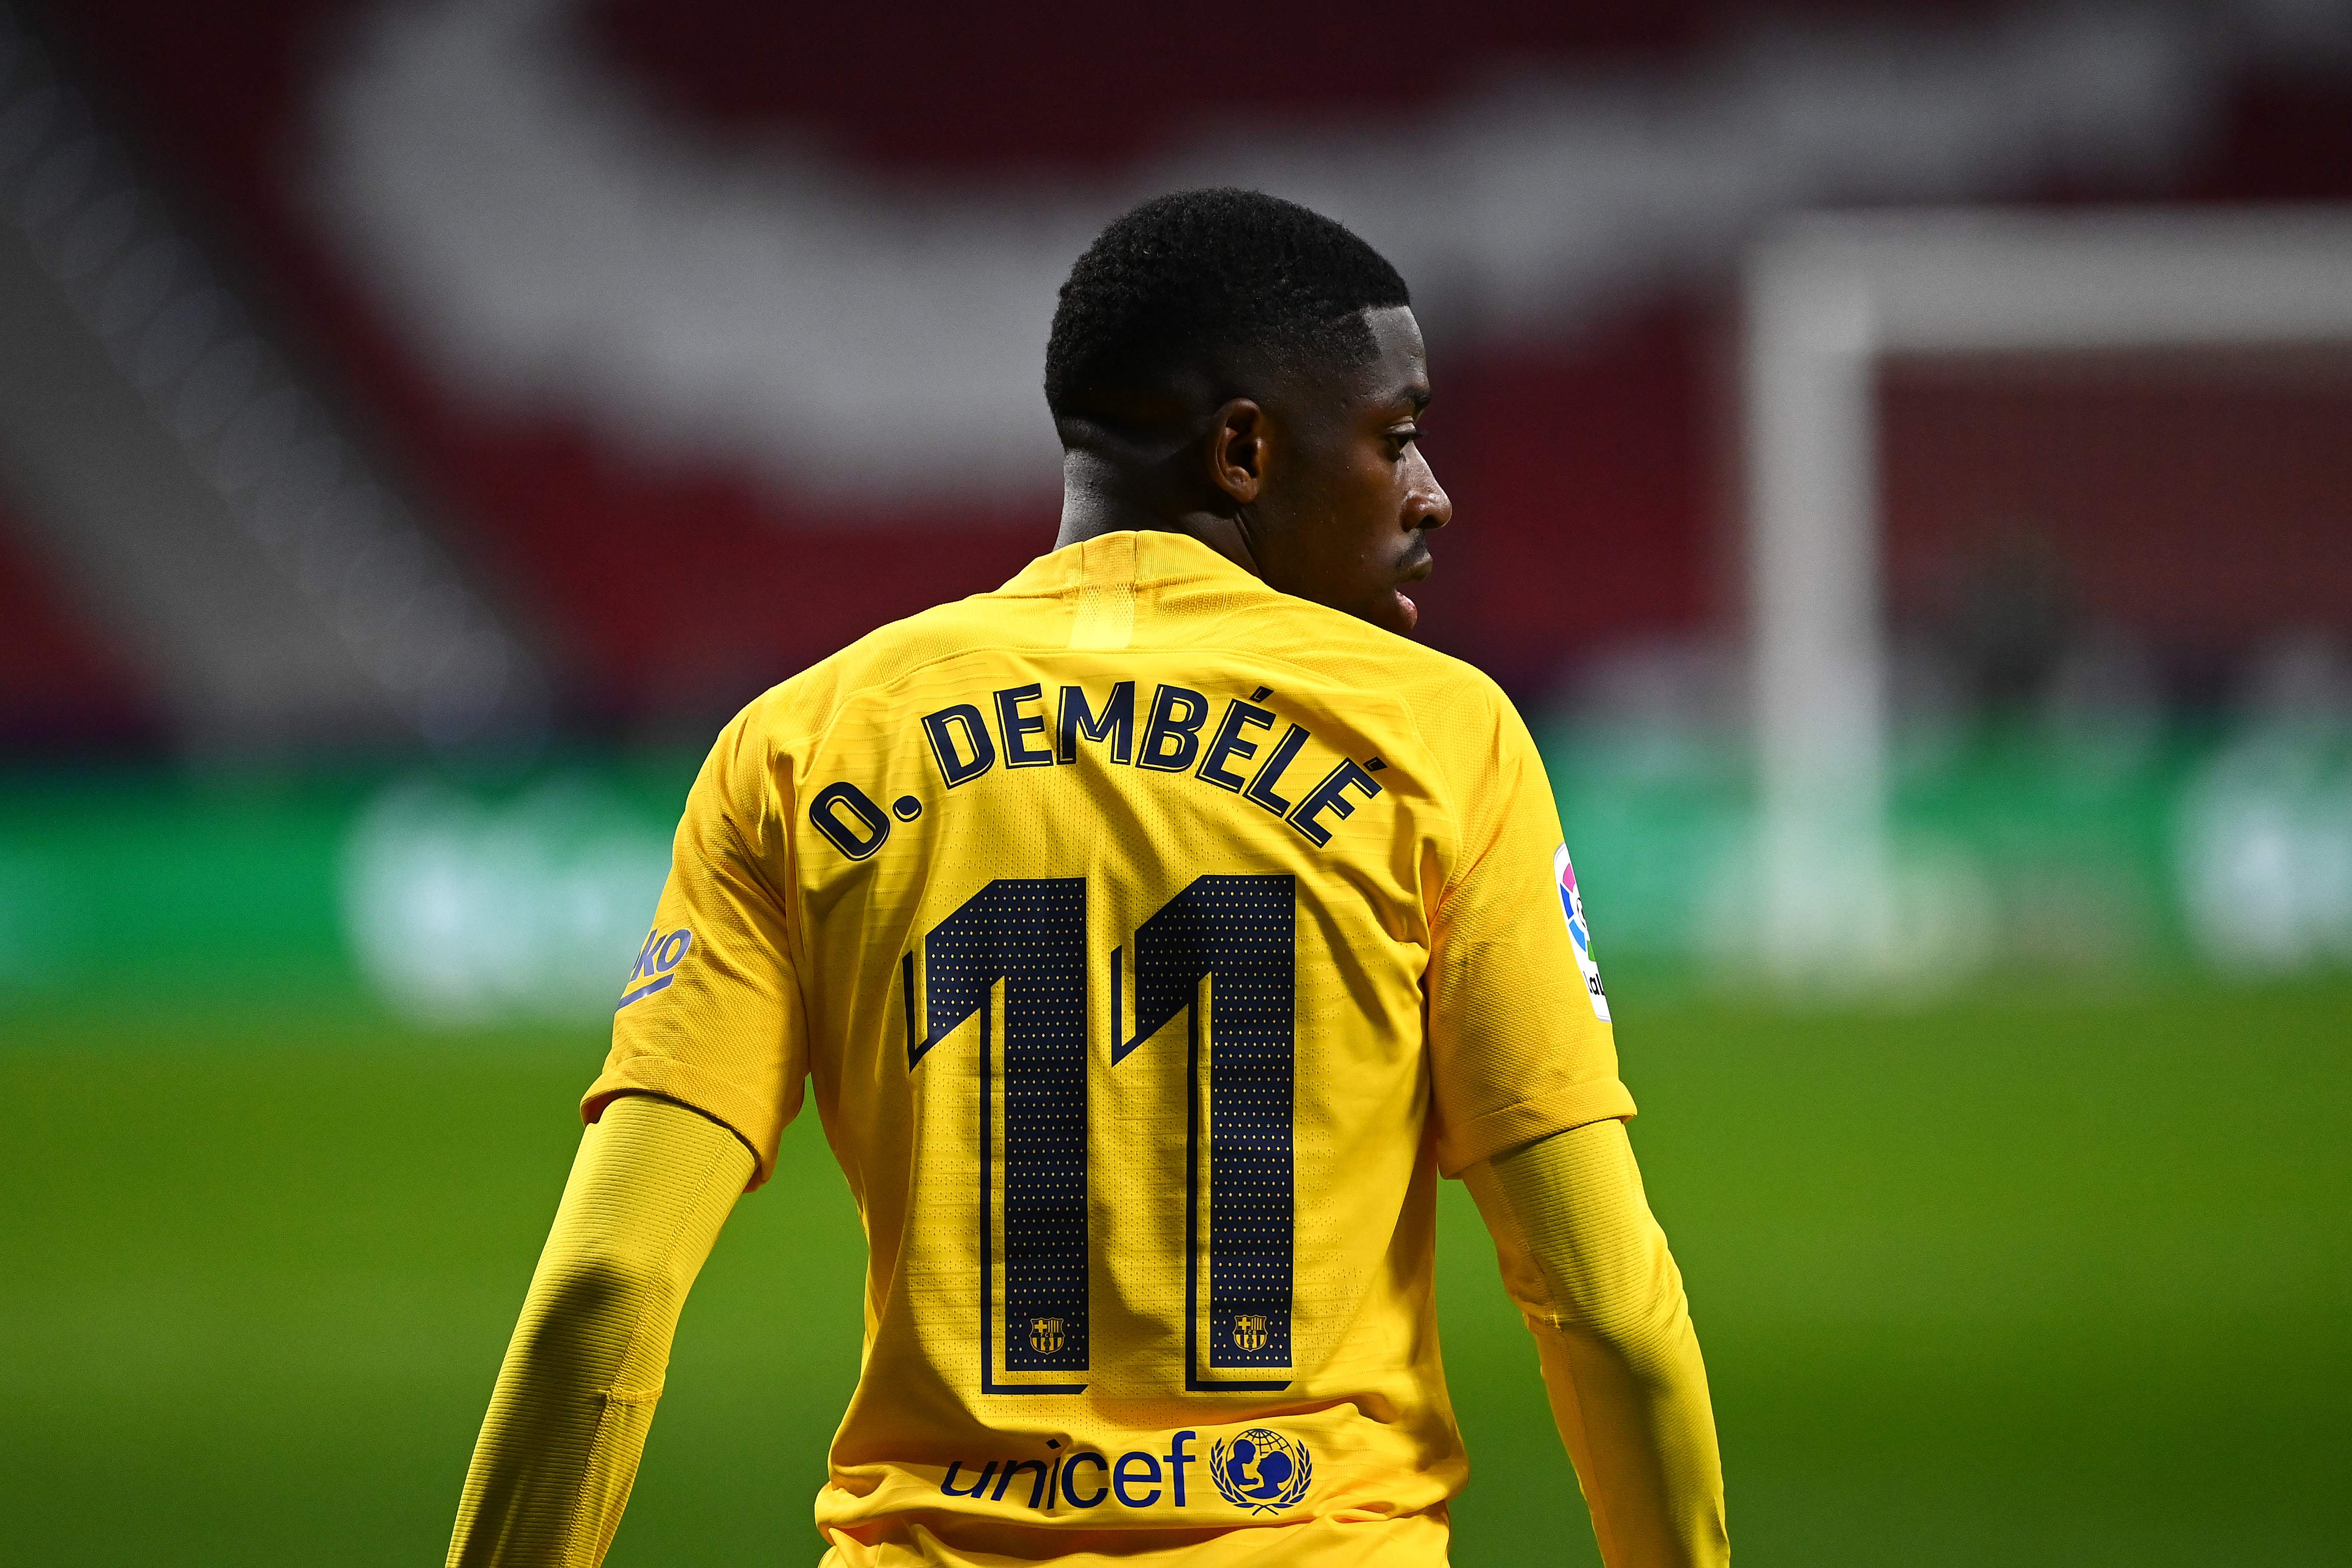 El francés Ousmane Dembélé está pronto a regresar de lleno con el FC Barcelona tras una lesión que lo alejó varias semanas. (Foto Prensa Libre: AFP)